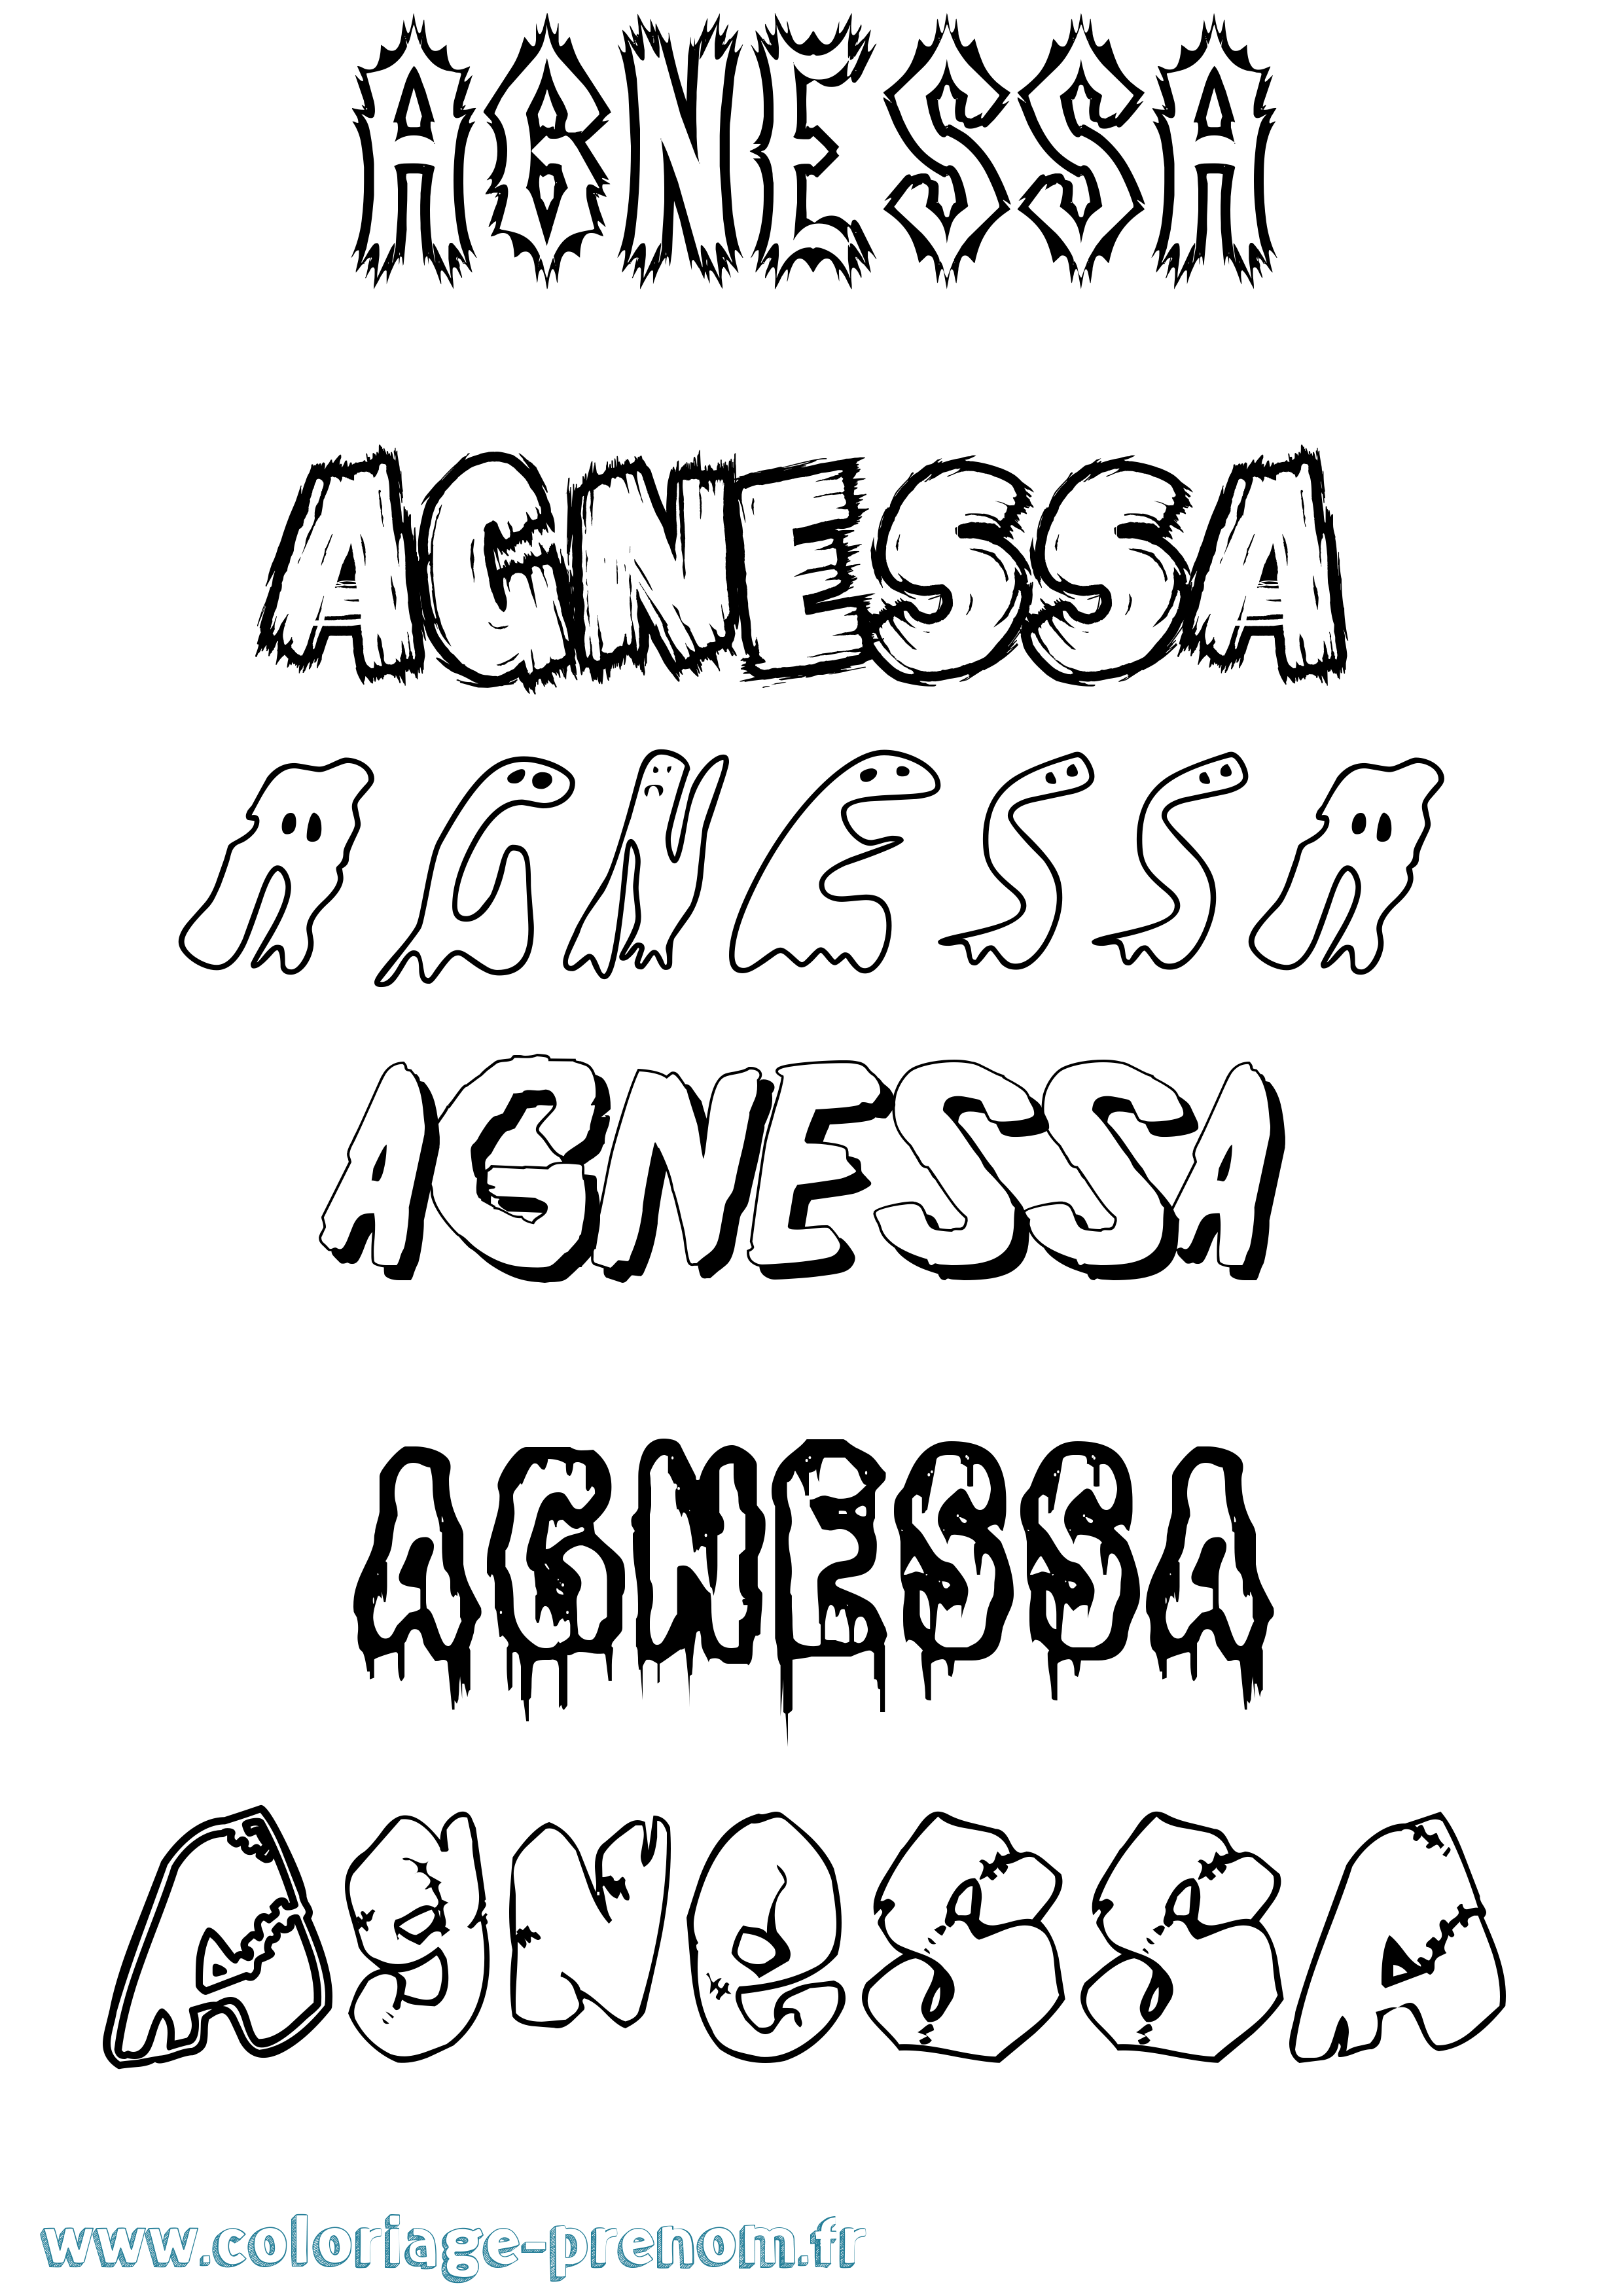 Coloriage prénom Agnessa Frisson